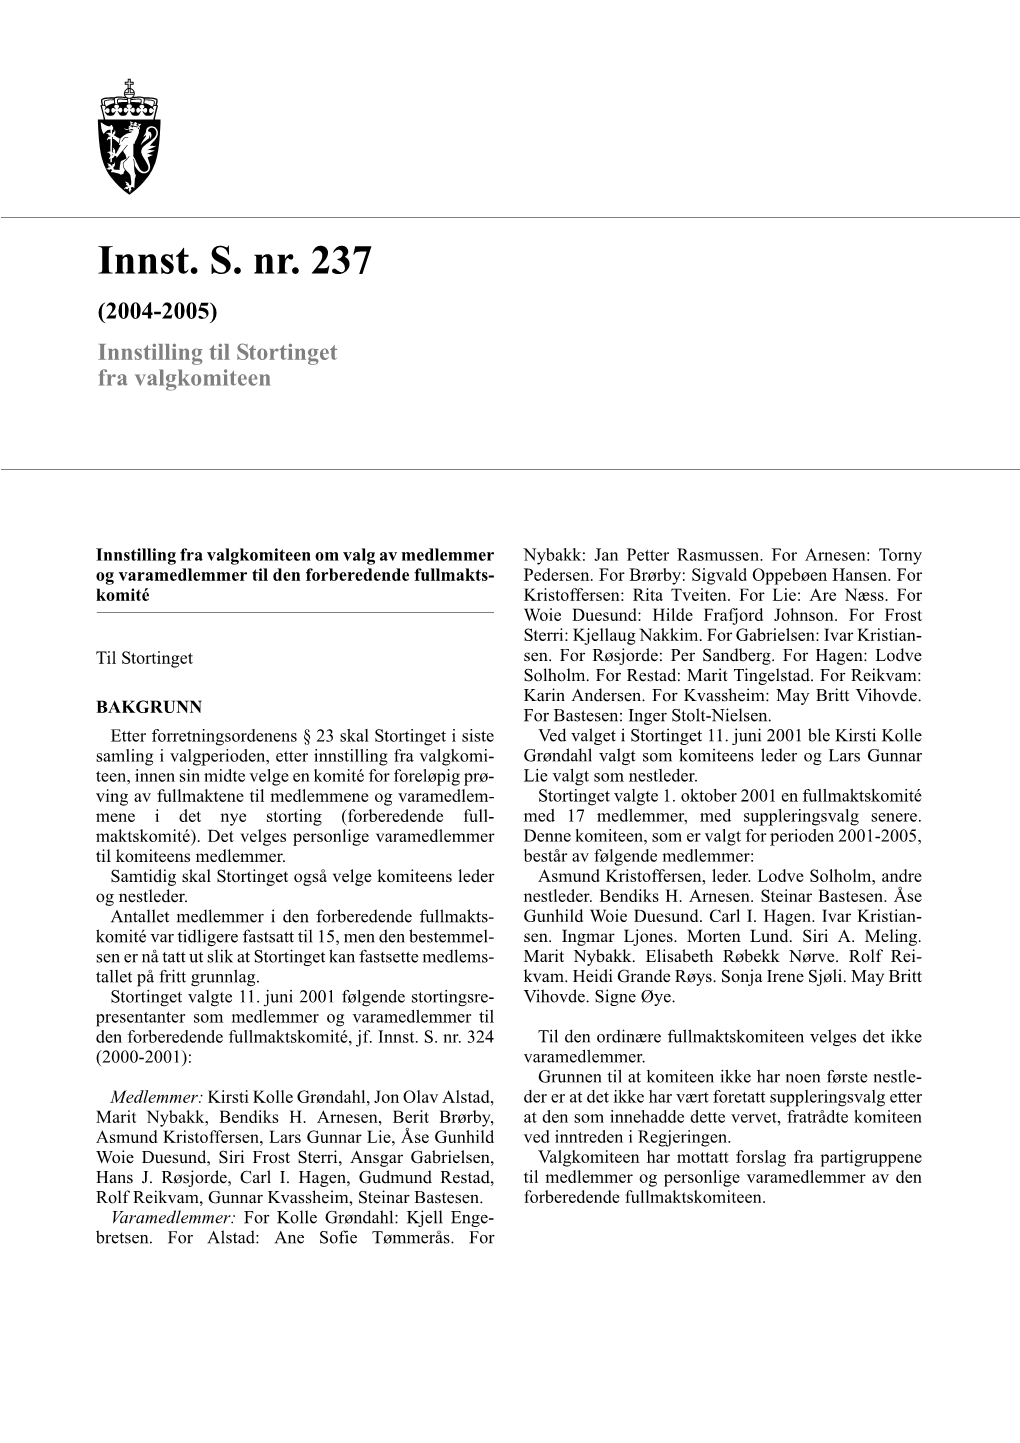 Innst. S. Nr. 237 (2004-2005) Innstilling Til Stortinget Fra Valgkomiteen